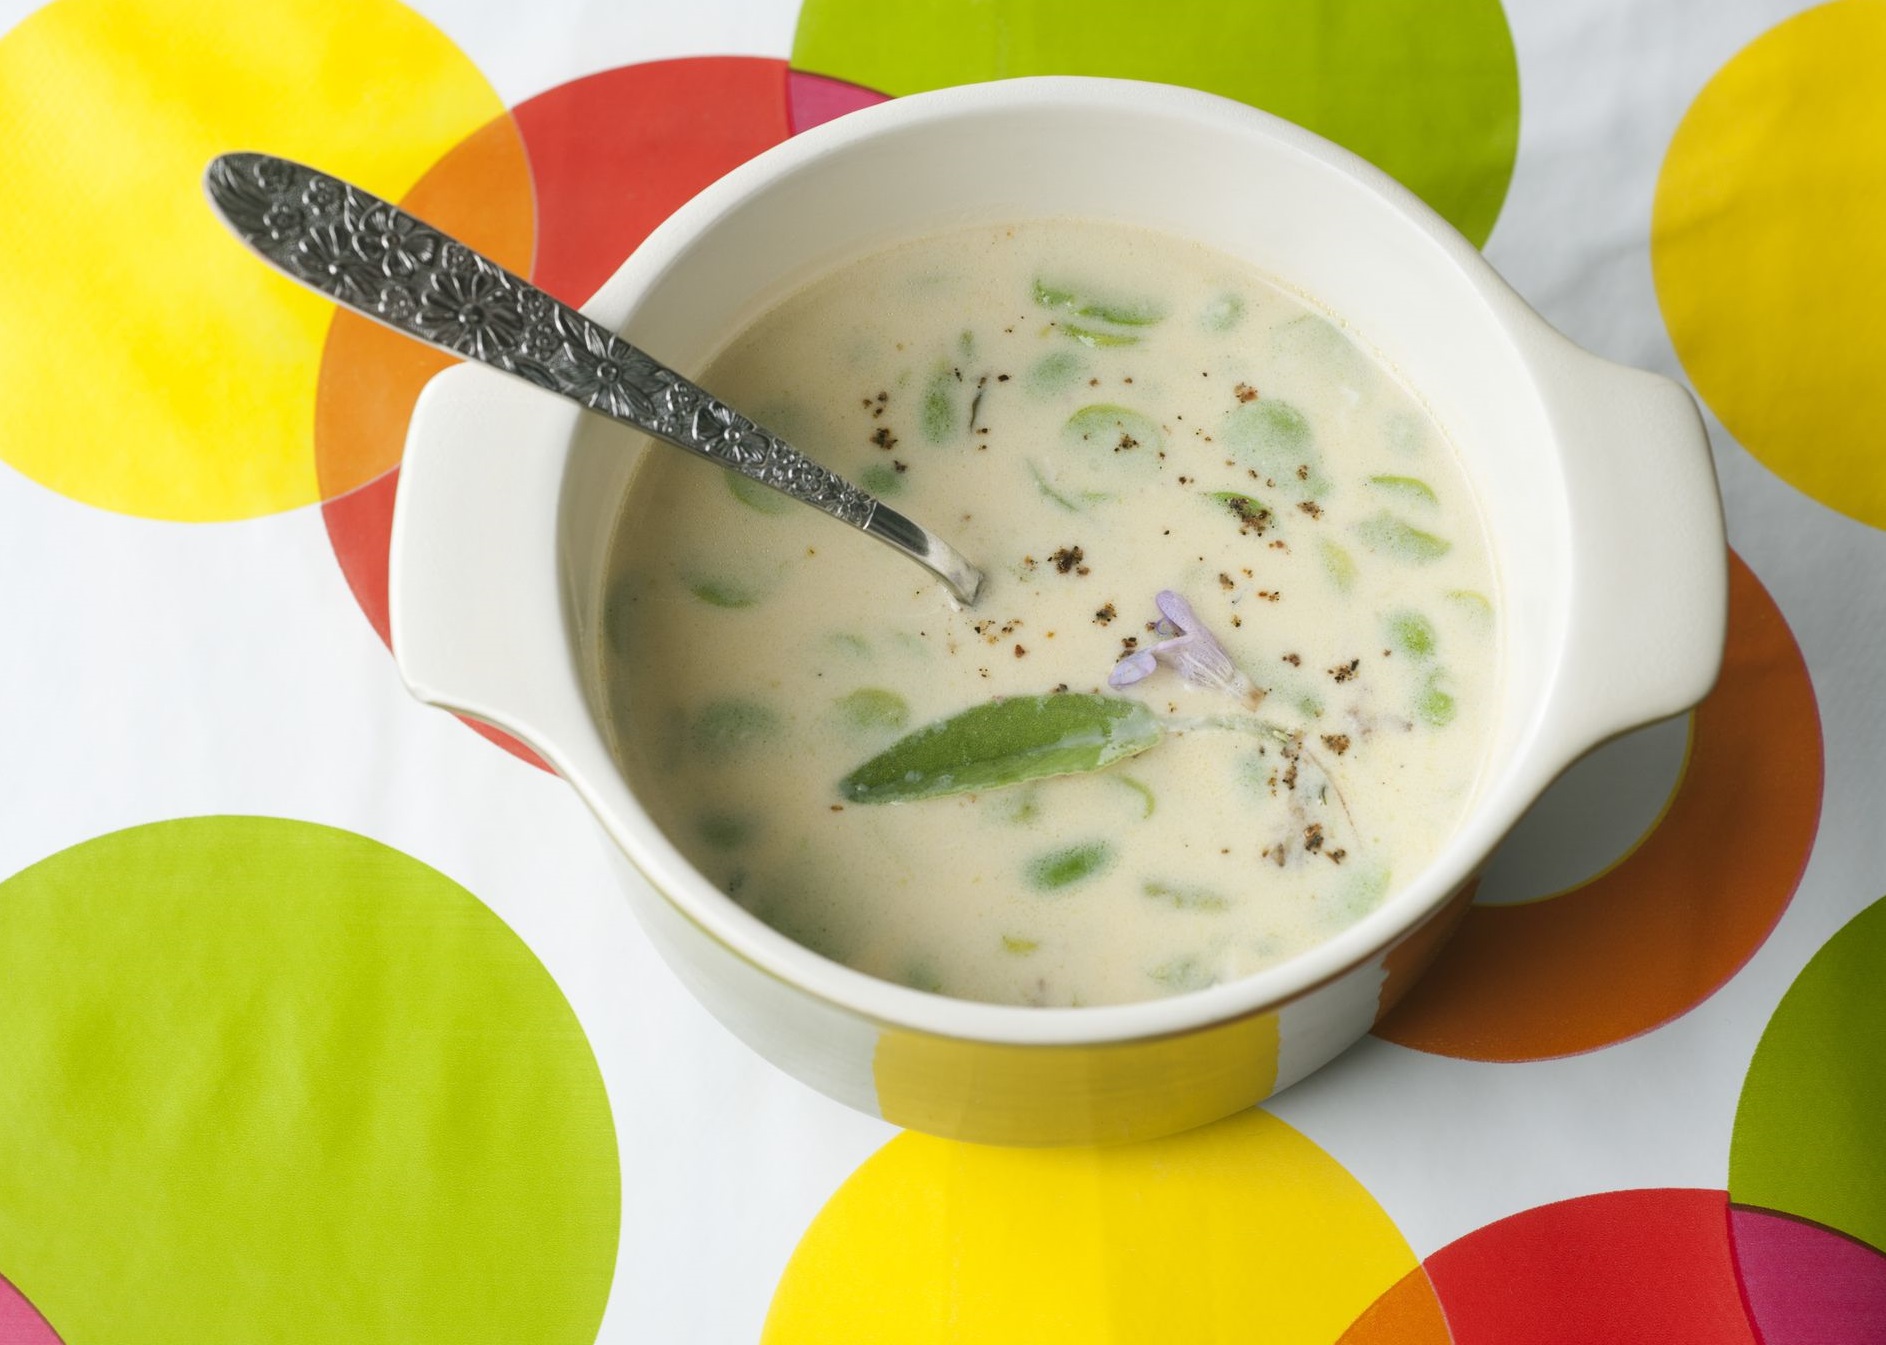 سوپ شیر و سبزیجات - سوپ شیر مجلسی